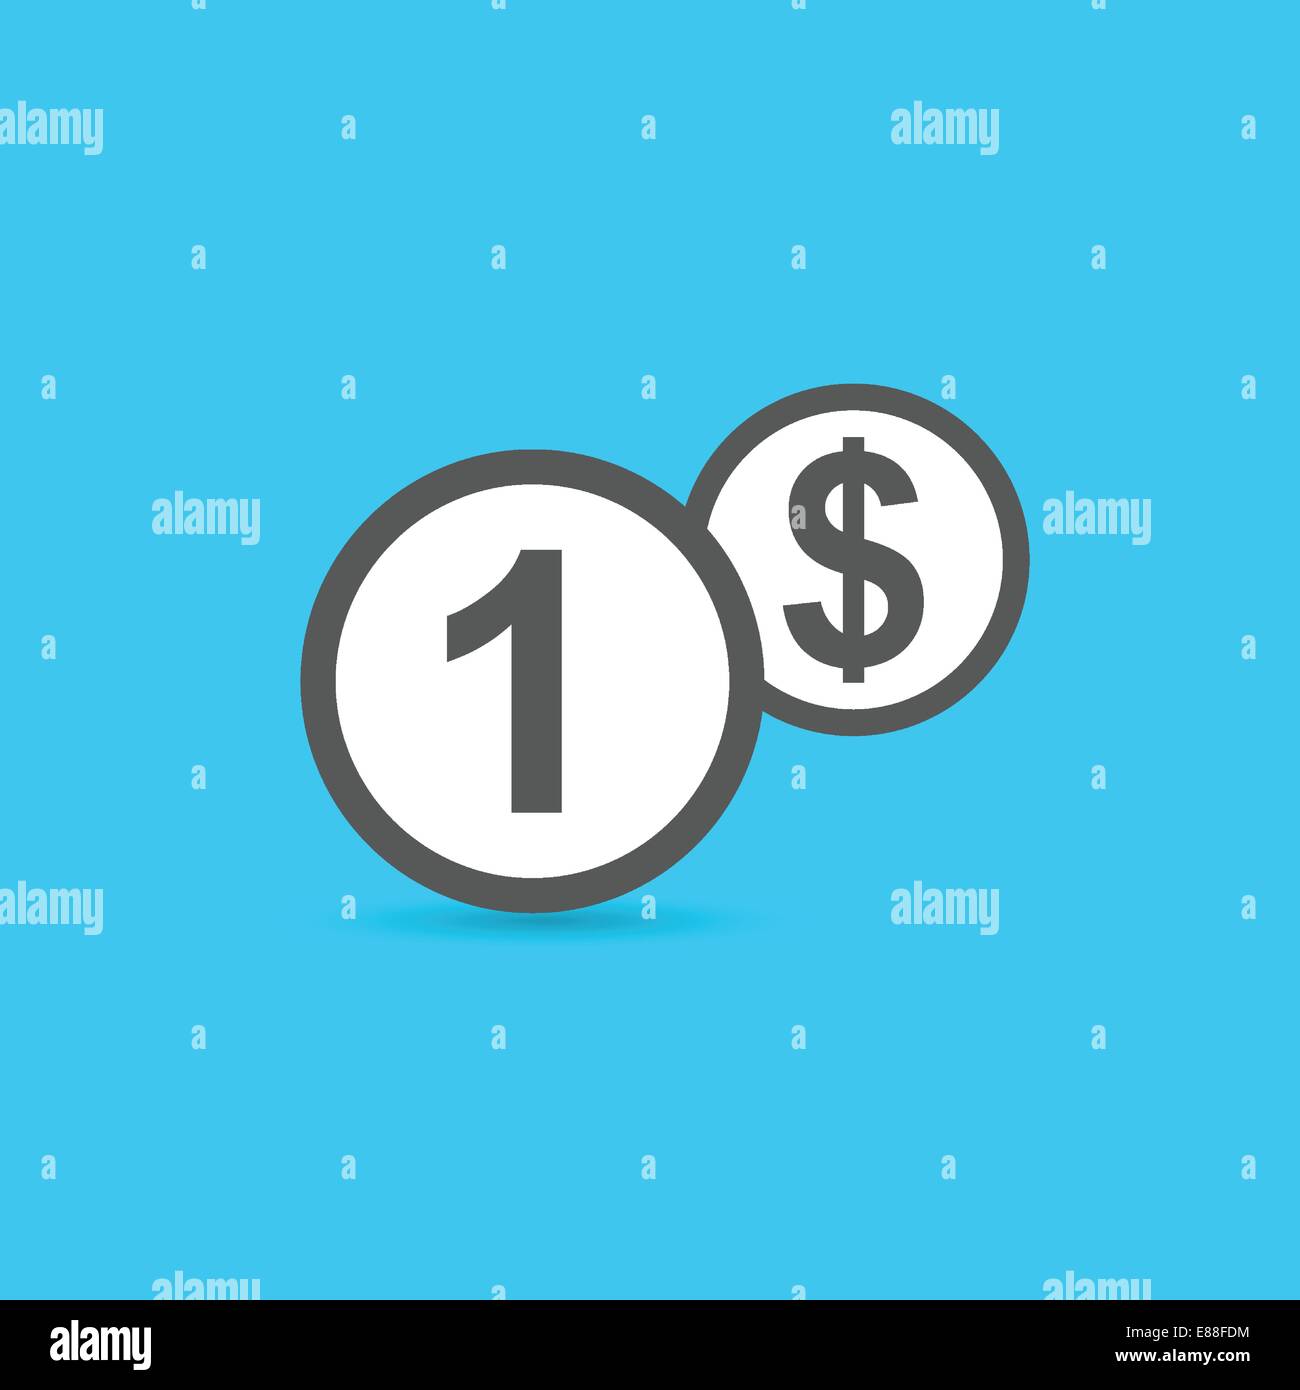 One dollar coin icon Stock Vector